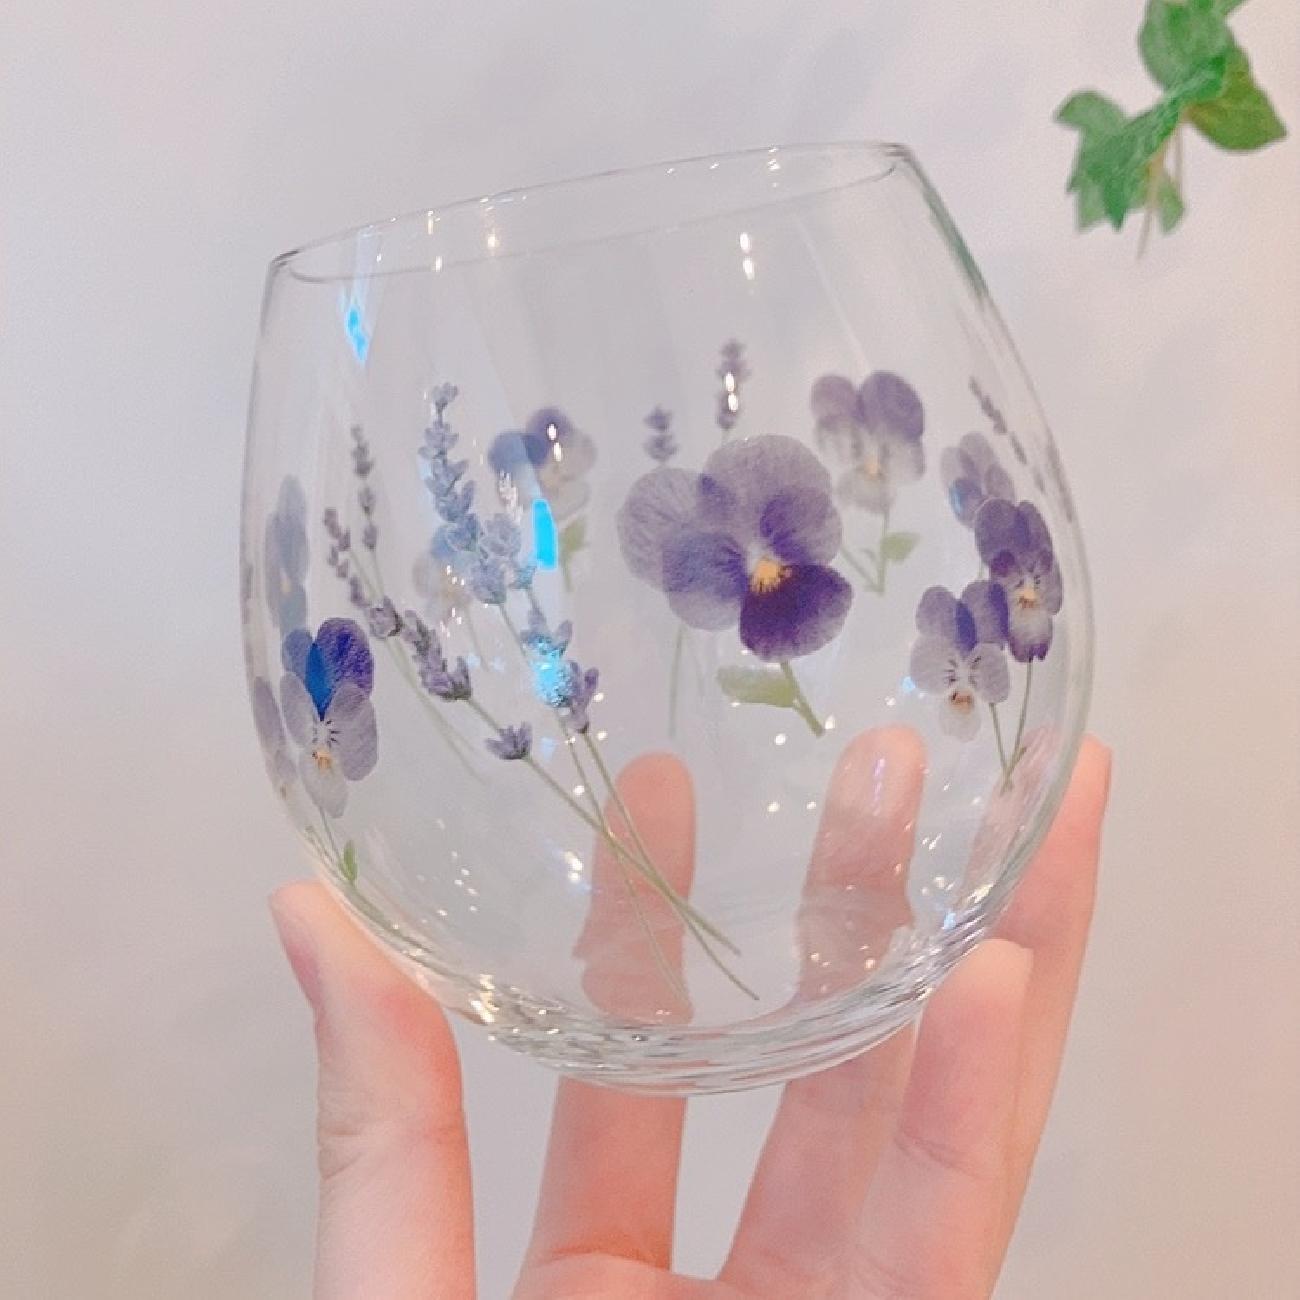 グラス/ビオラ/ラベンダー/花/お花/ペアグラス/タンブラー/お花好き/耐熱マグ/マグカップ/ガラス